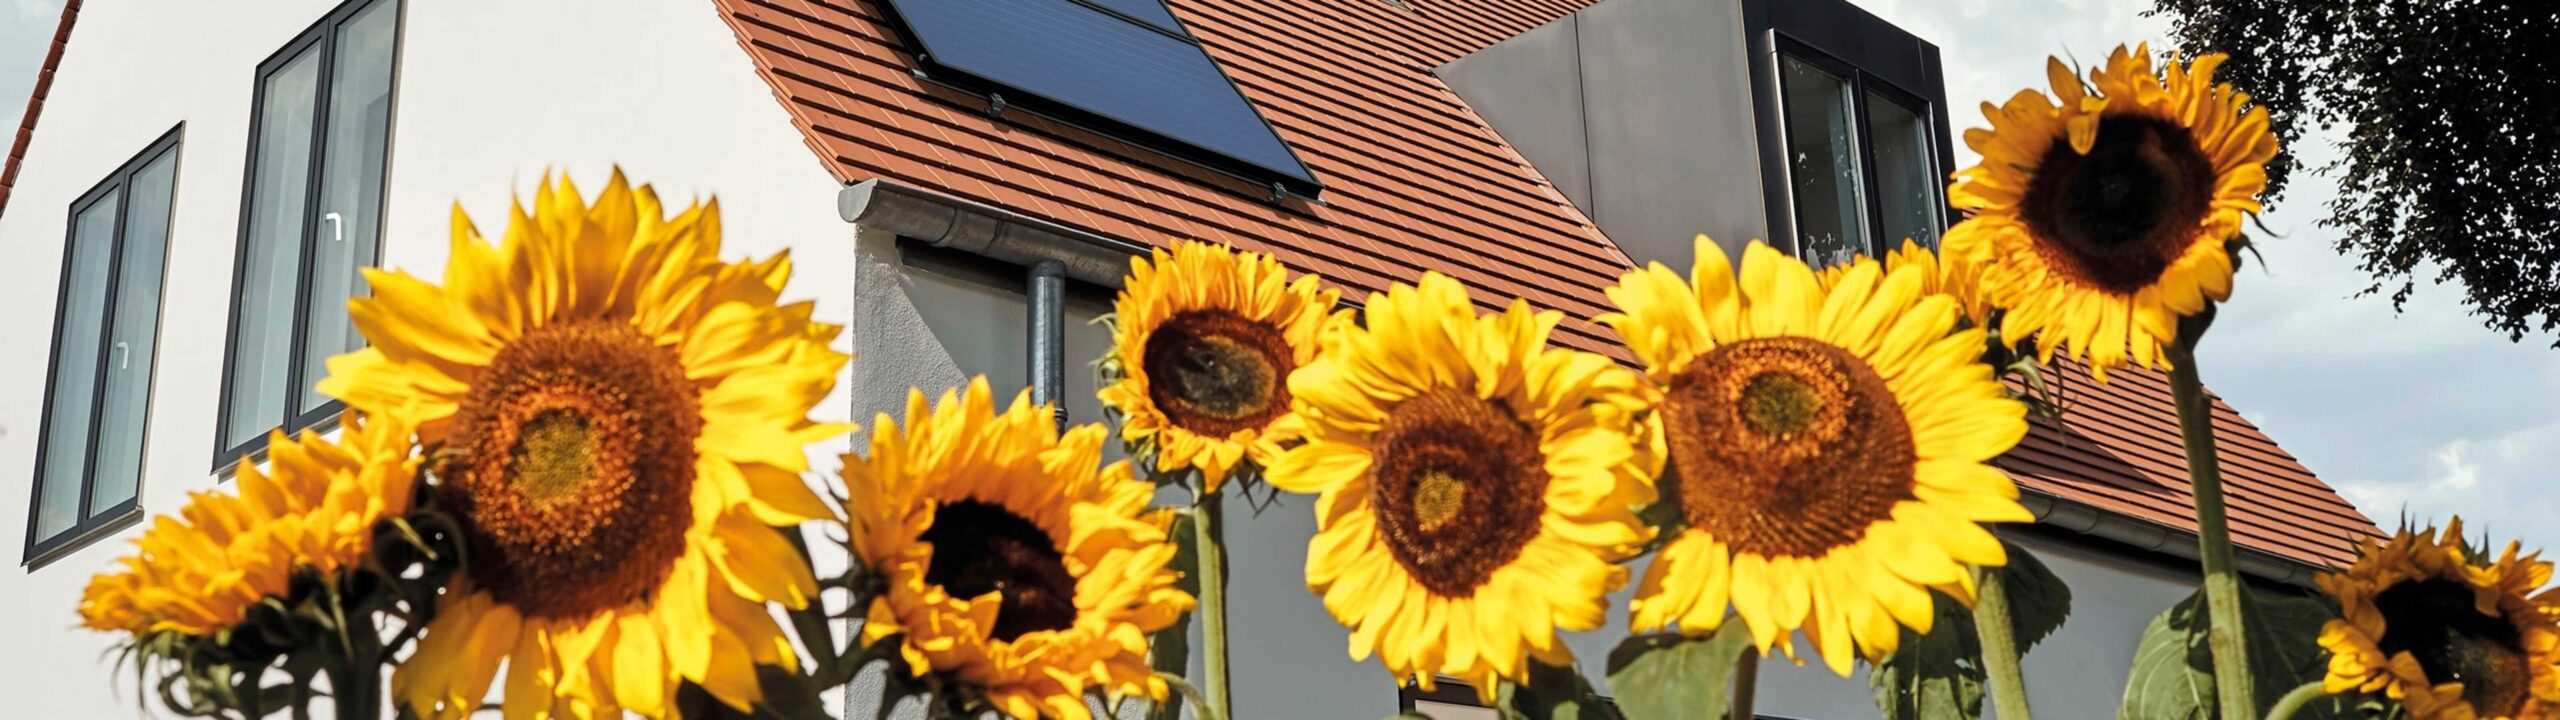 Sfeerbeeld zonneboiler met zonnebloemen op de voorgrond